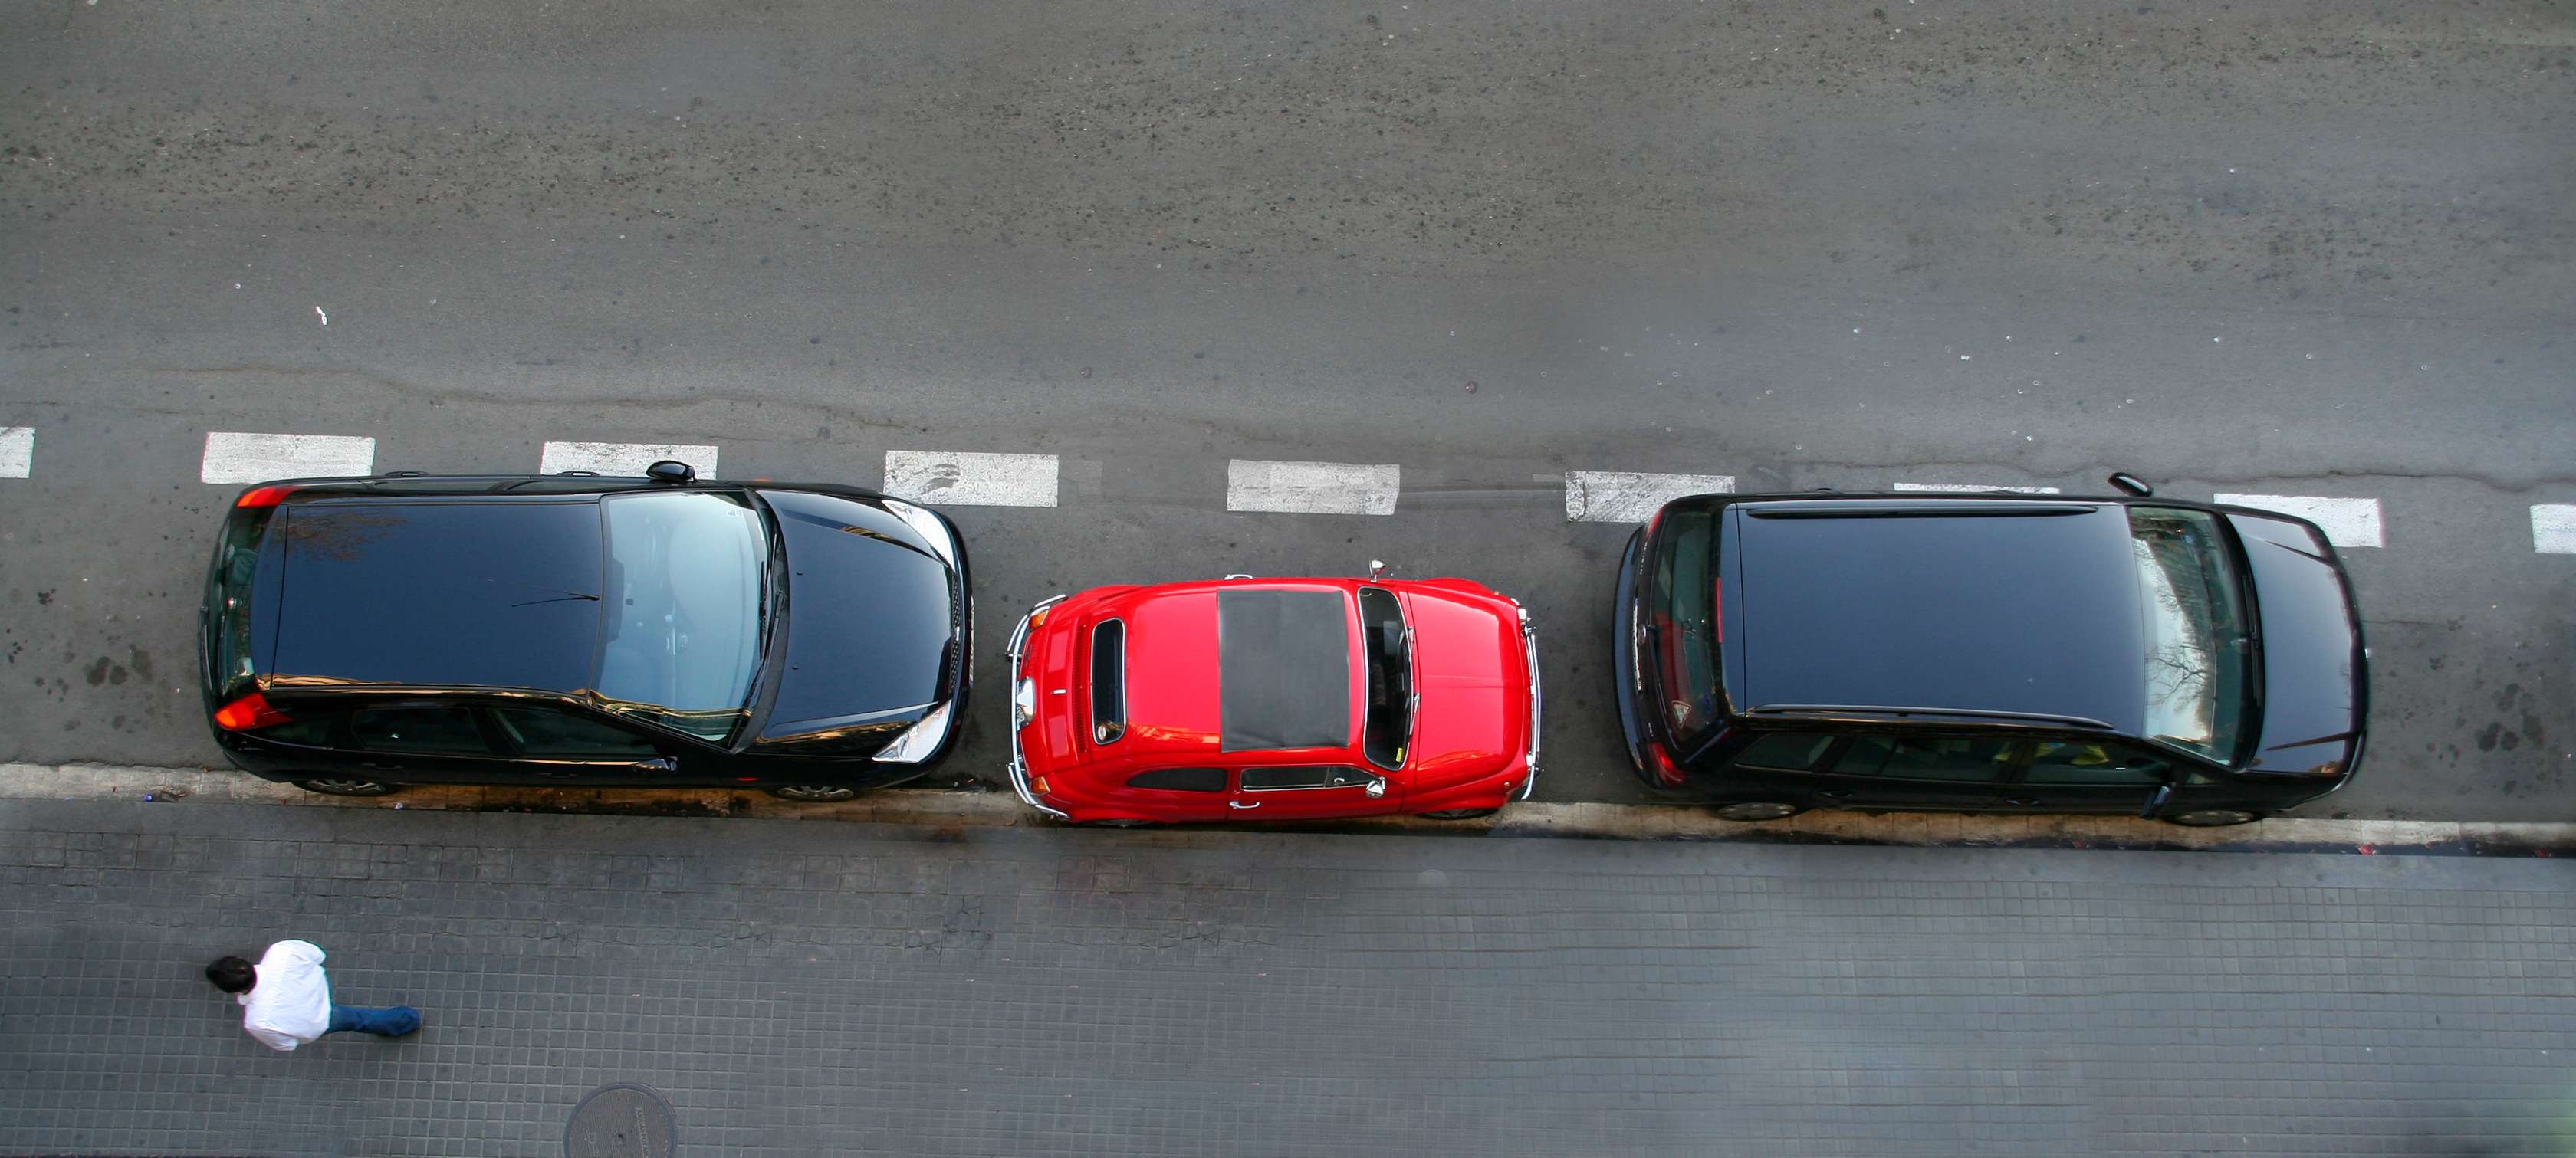 Zweitwagen versichern: Roter Kleinwagen parkt auf Straße zwischen zwei schwarzen Pkw